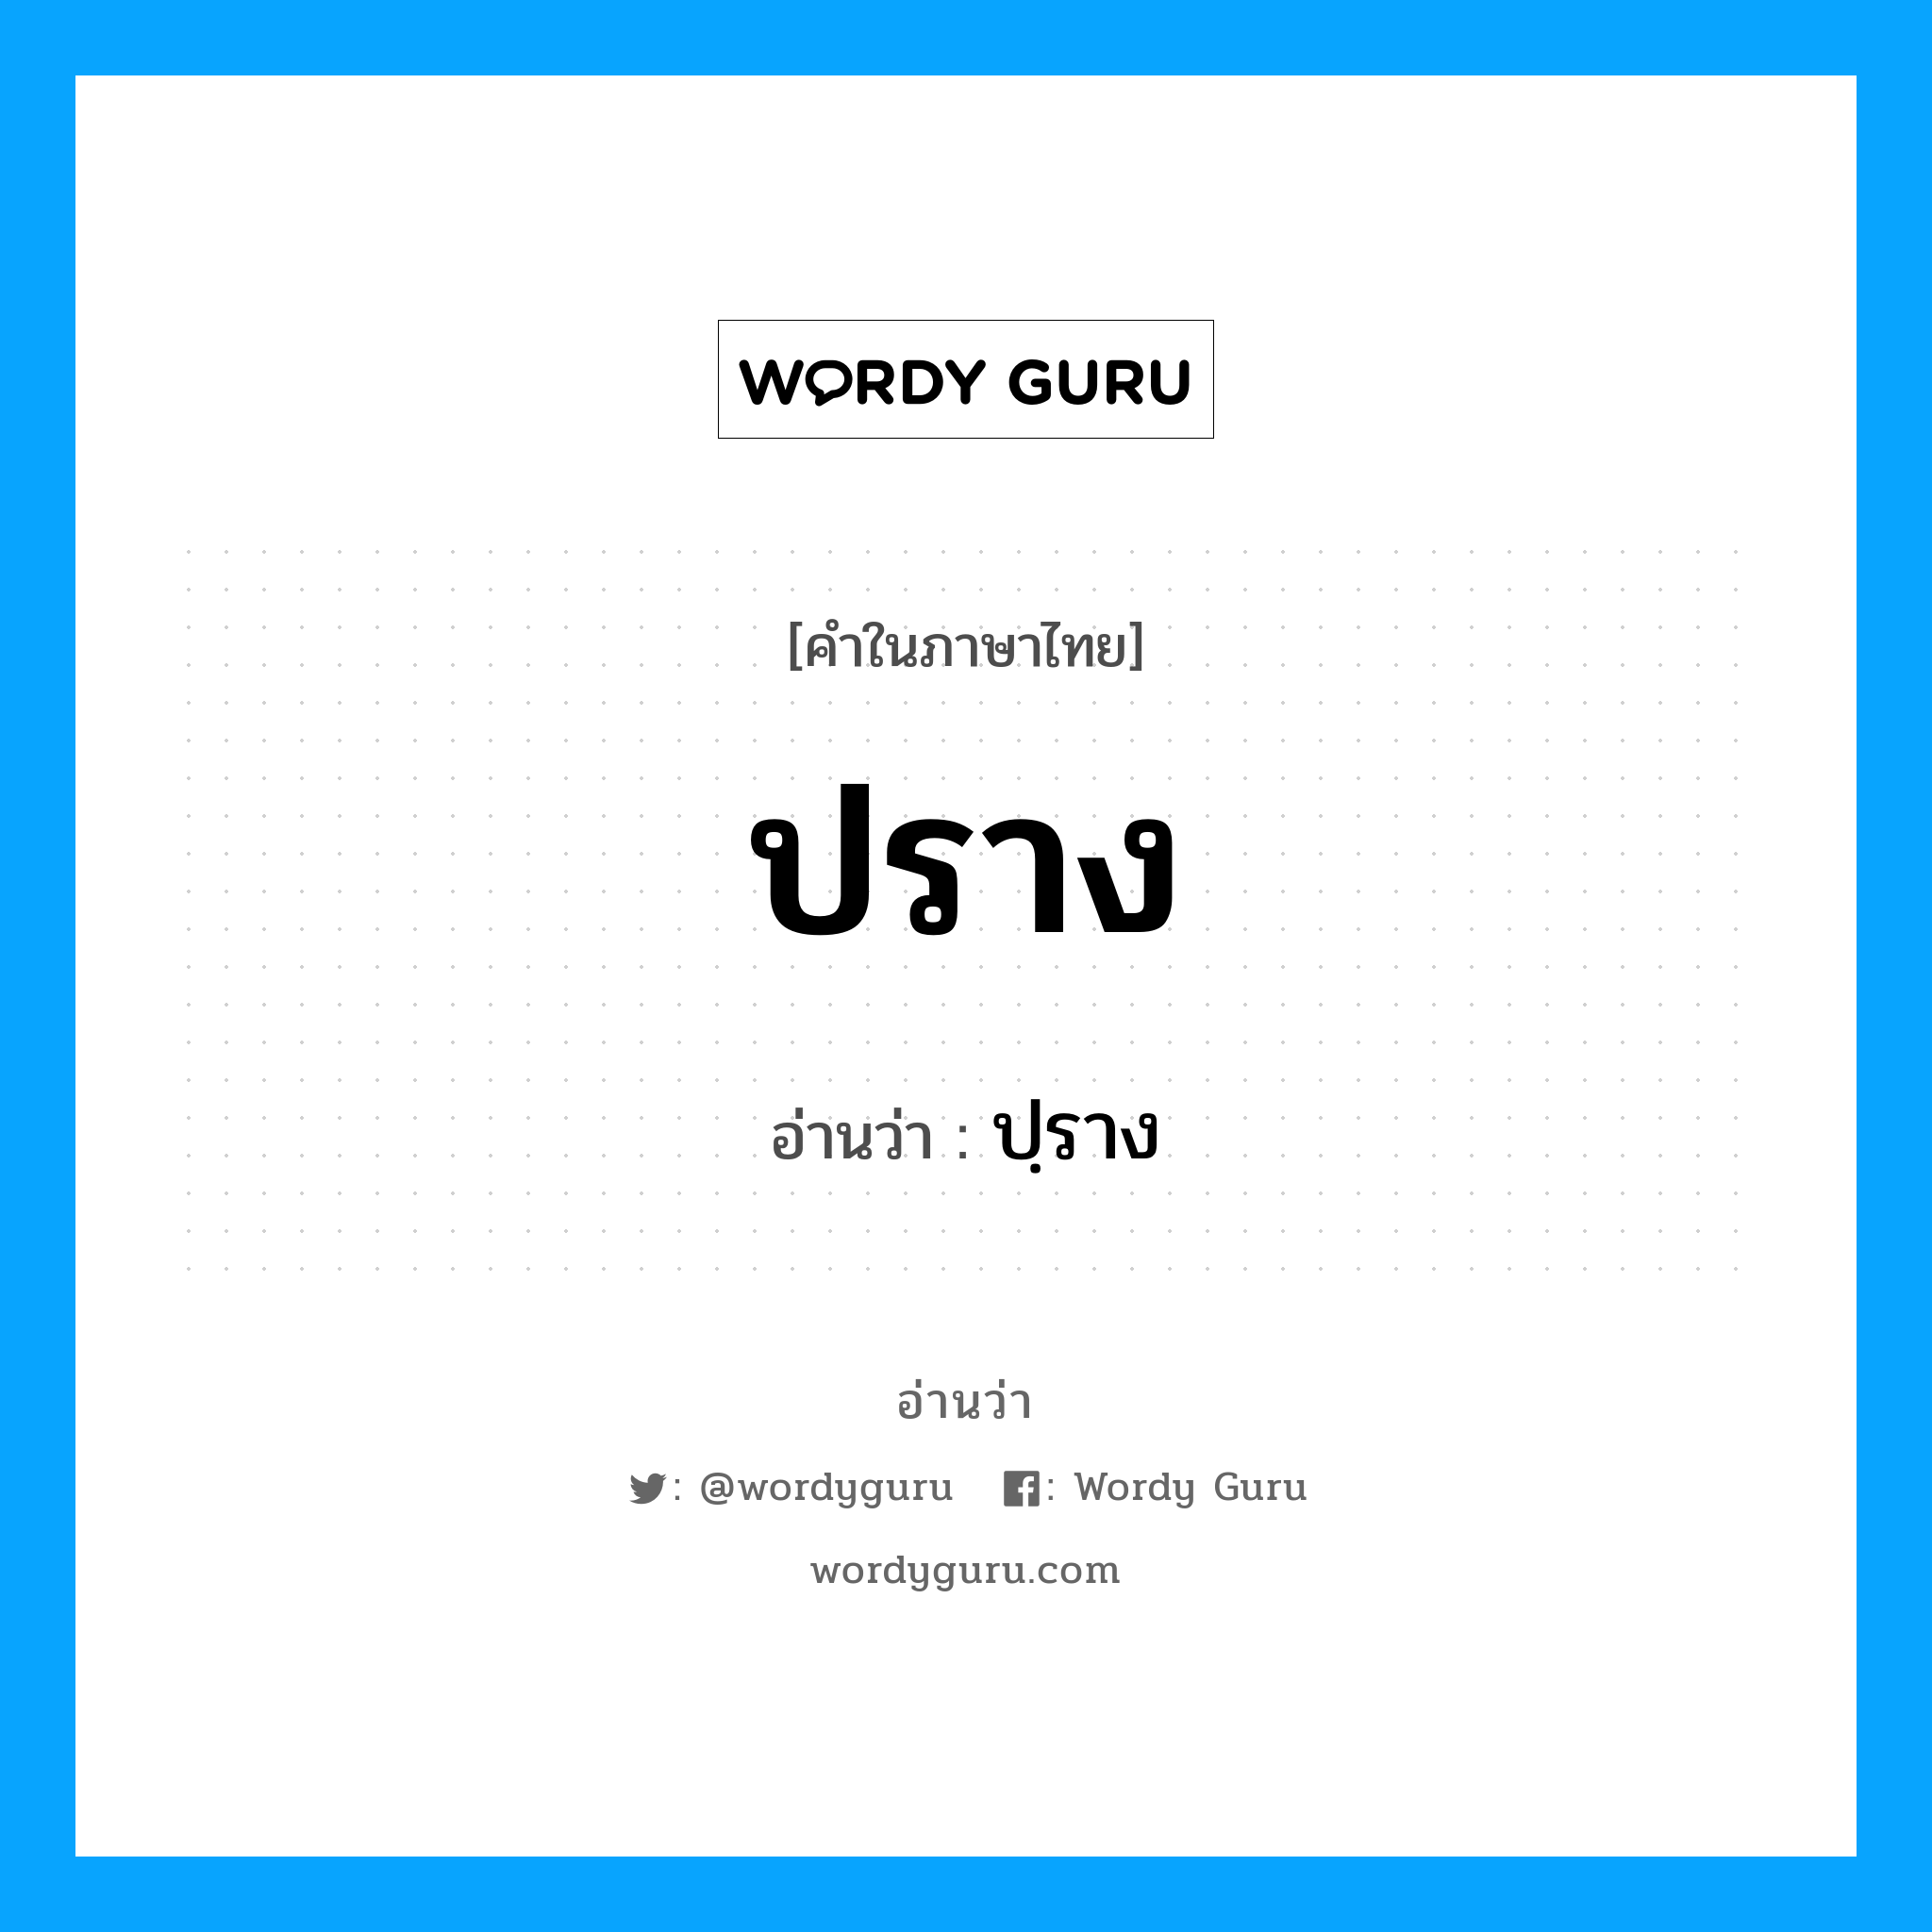 ปฺราง เป็นคำอ่านของคำไหน?, คำในภาษาไทย ปฺราง อ่านว่า ปราง